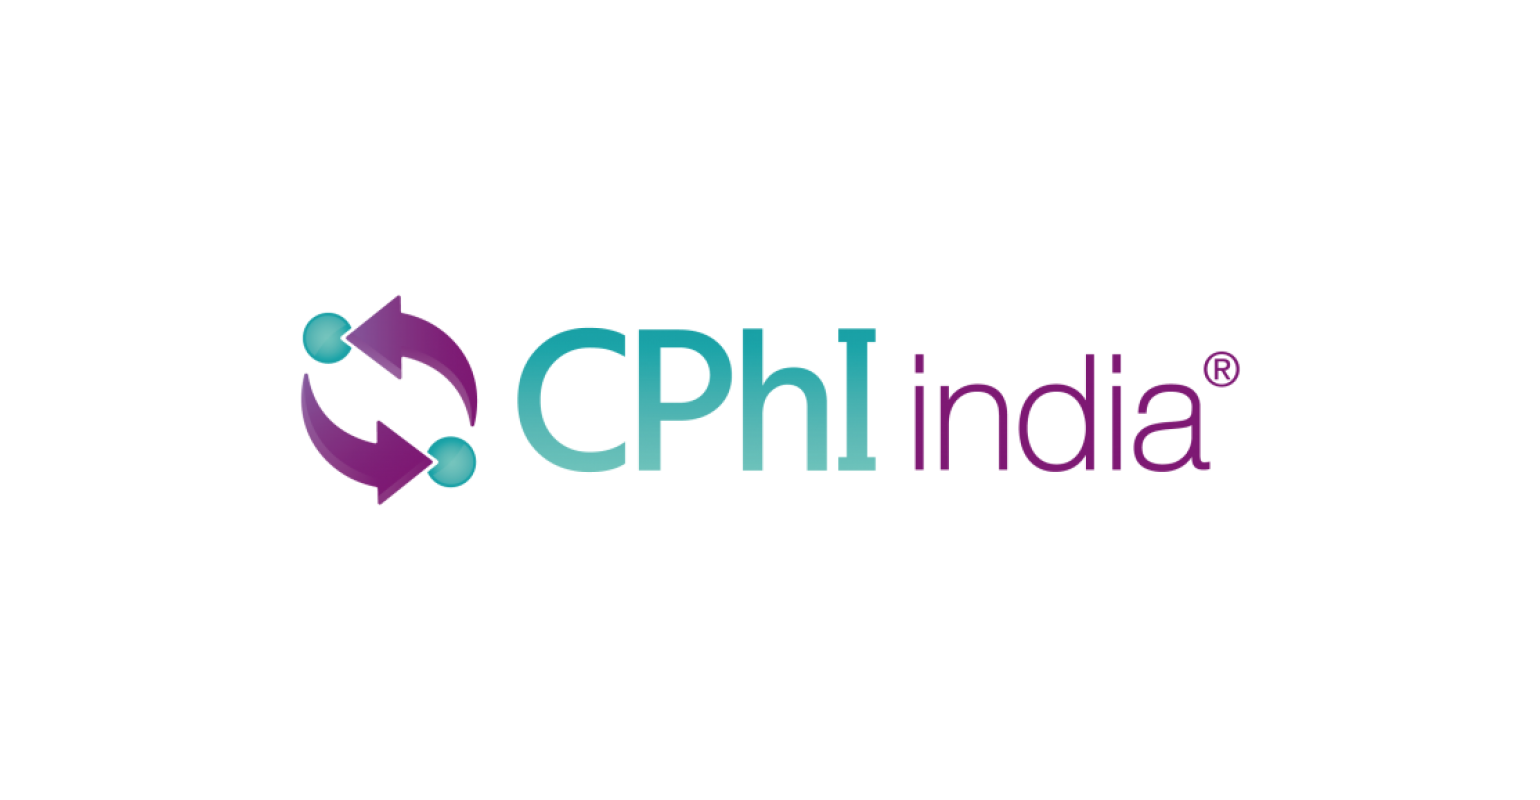 CPhI India 2018